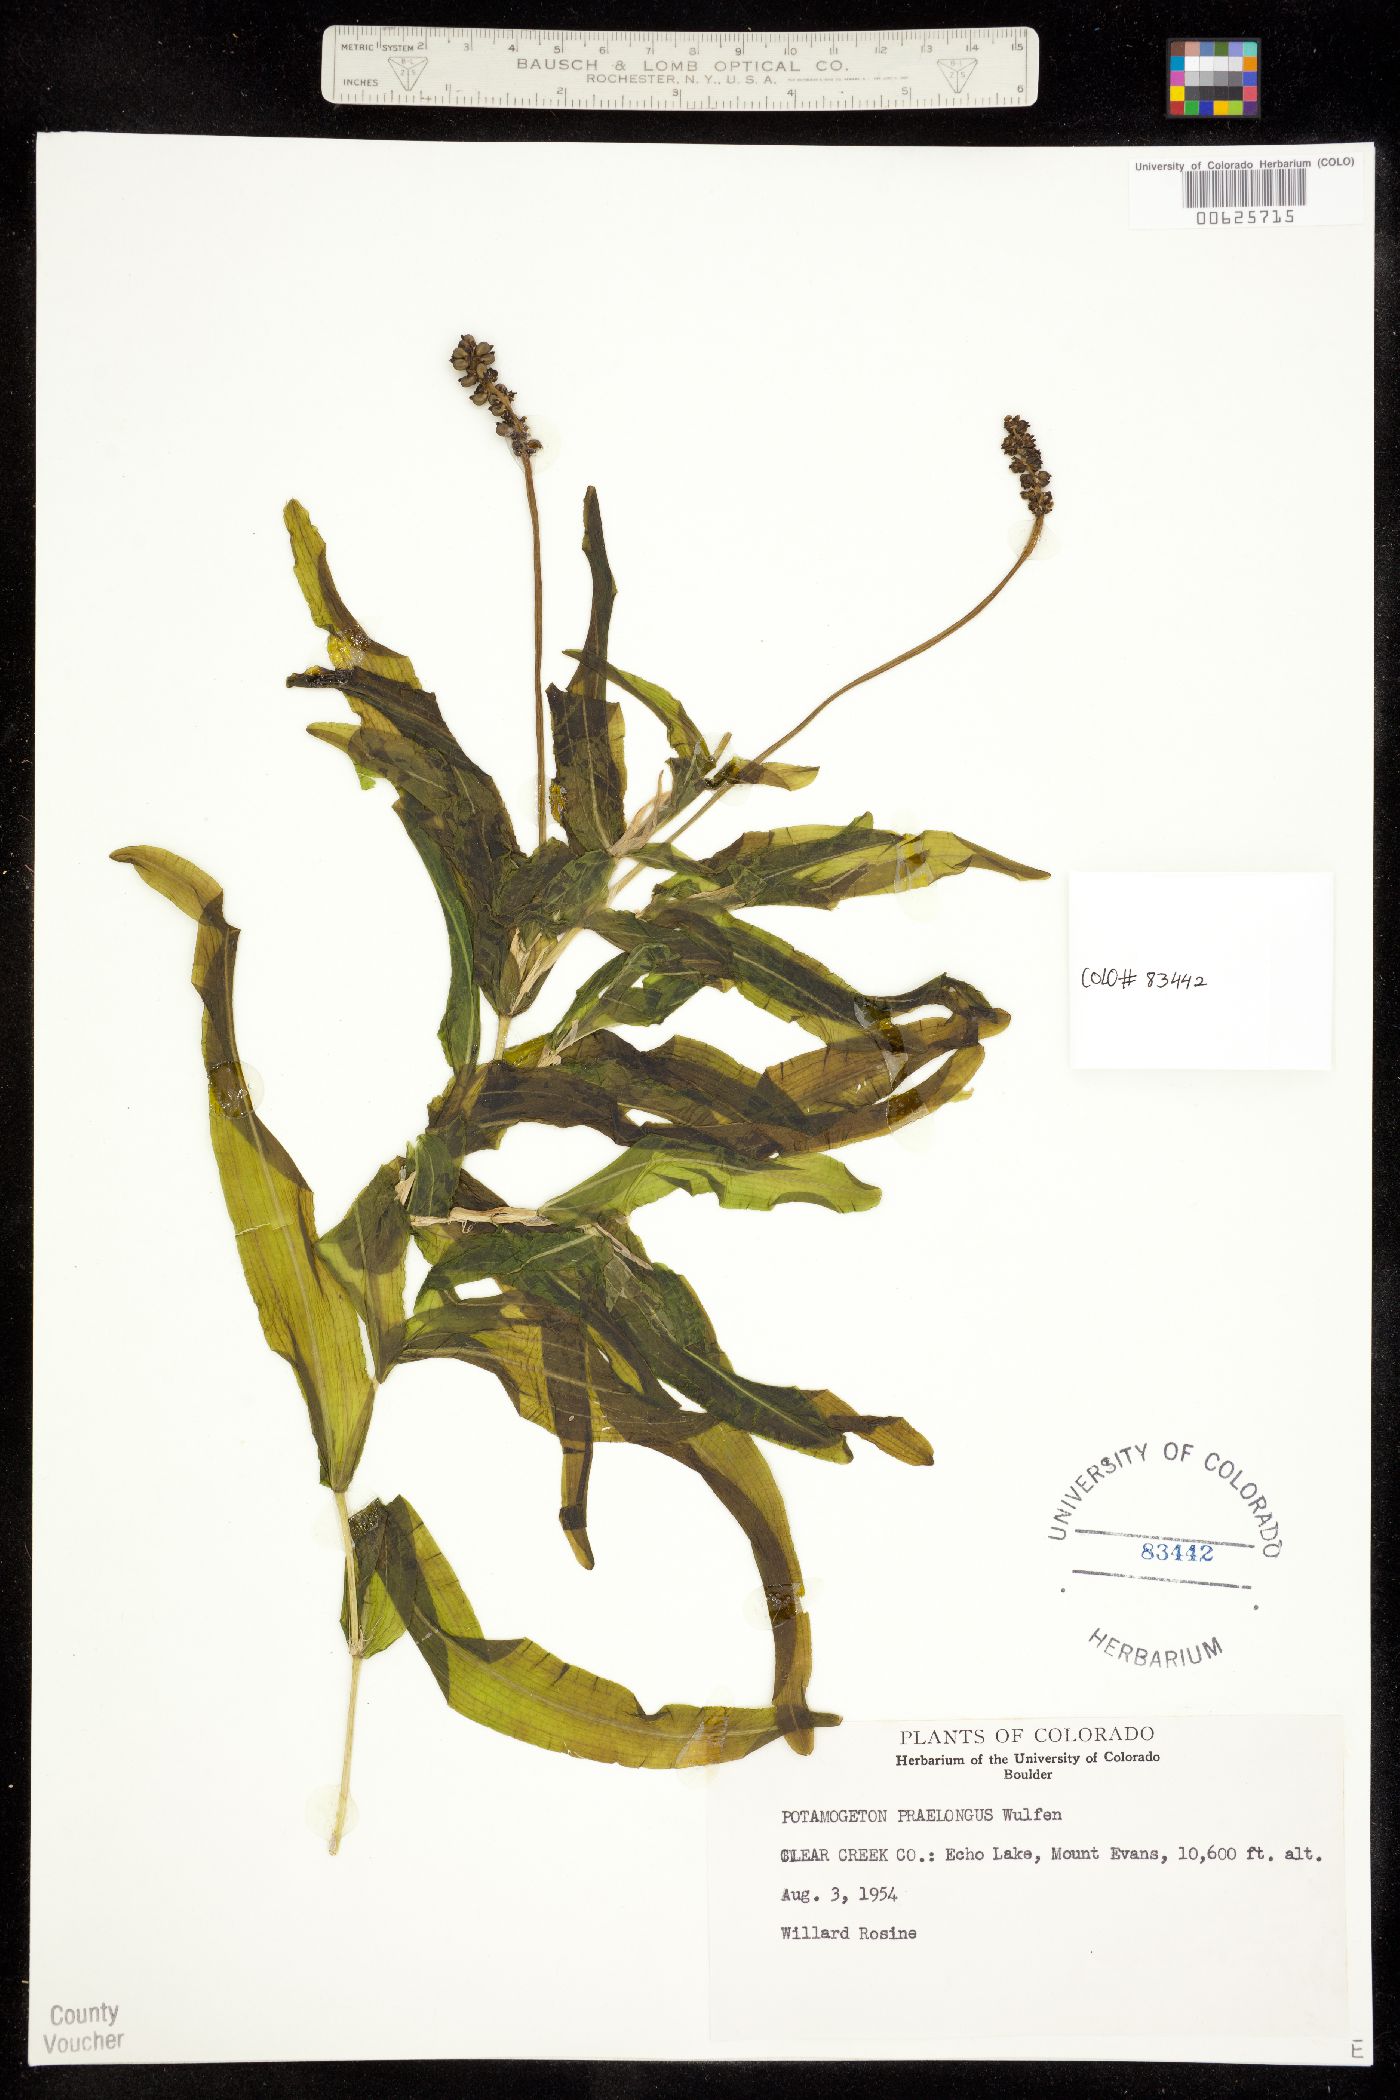 Potamogetonaceae image